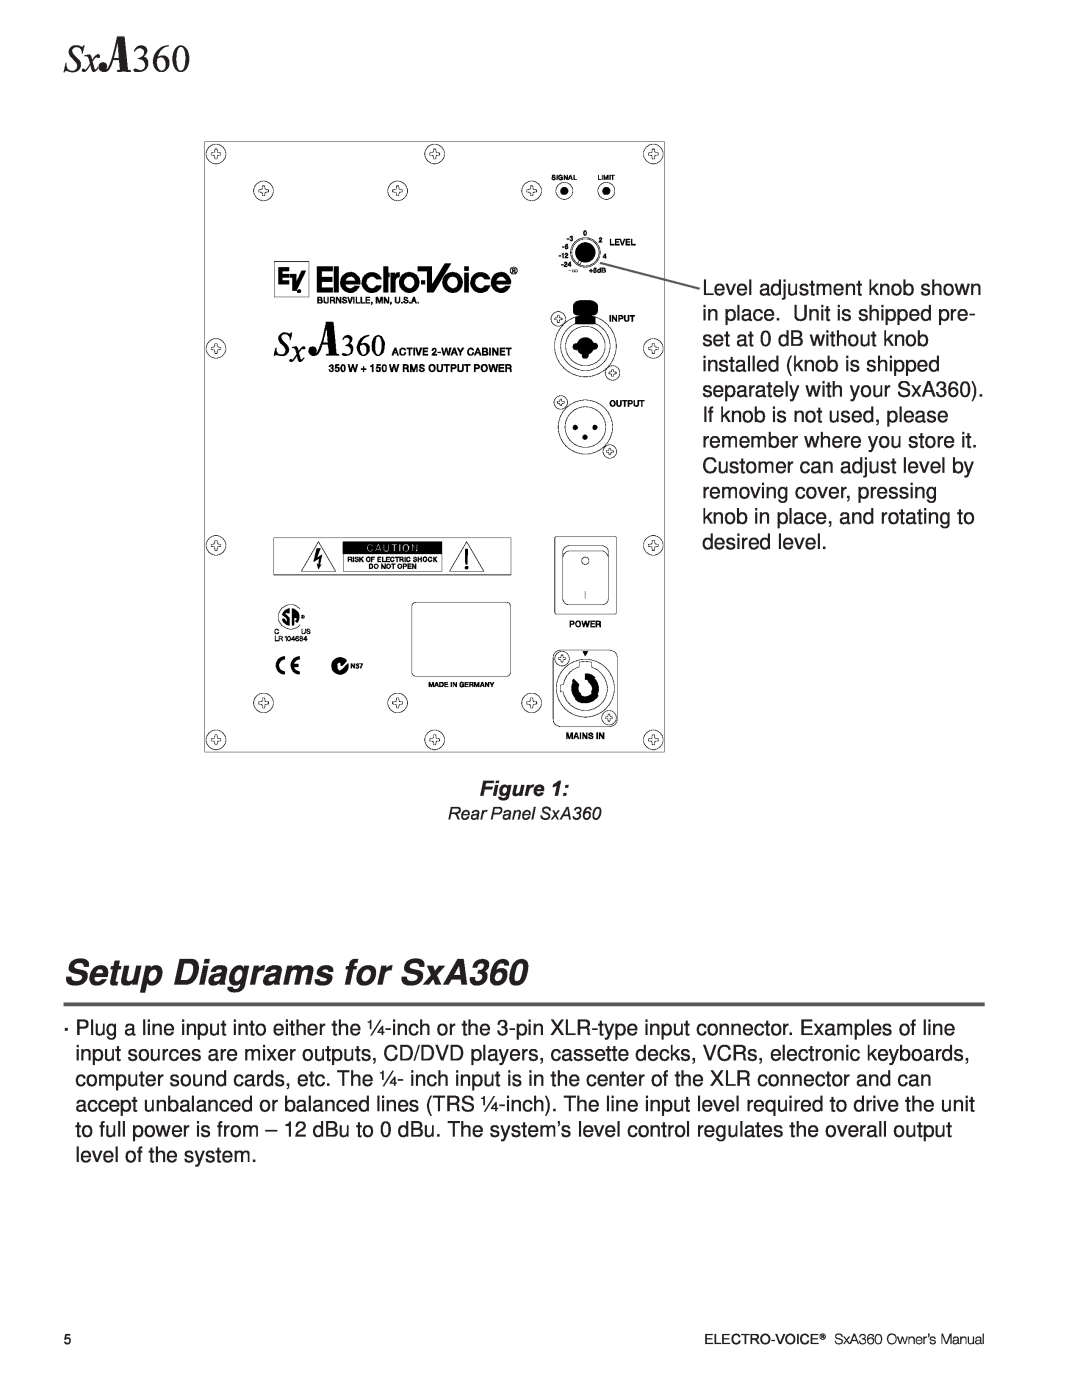 Electro-Voice manual Setup Diagrams for SxA360 